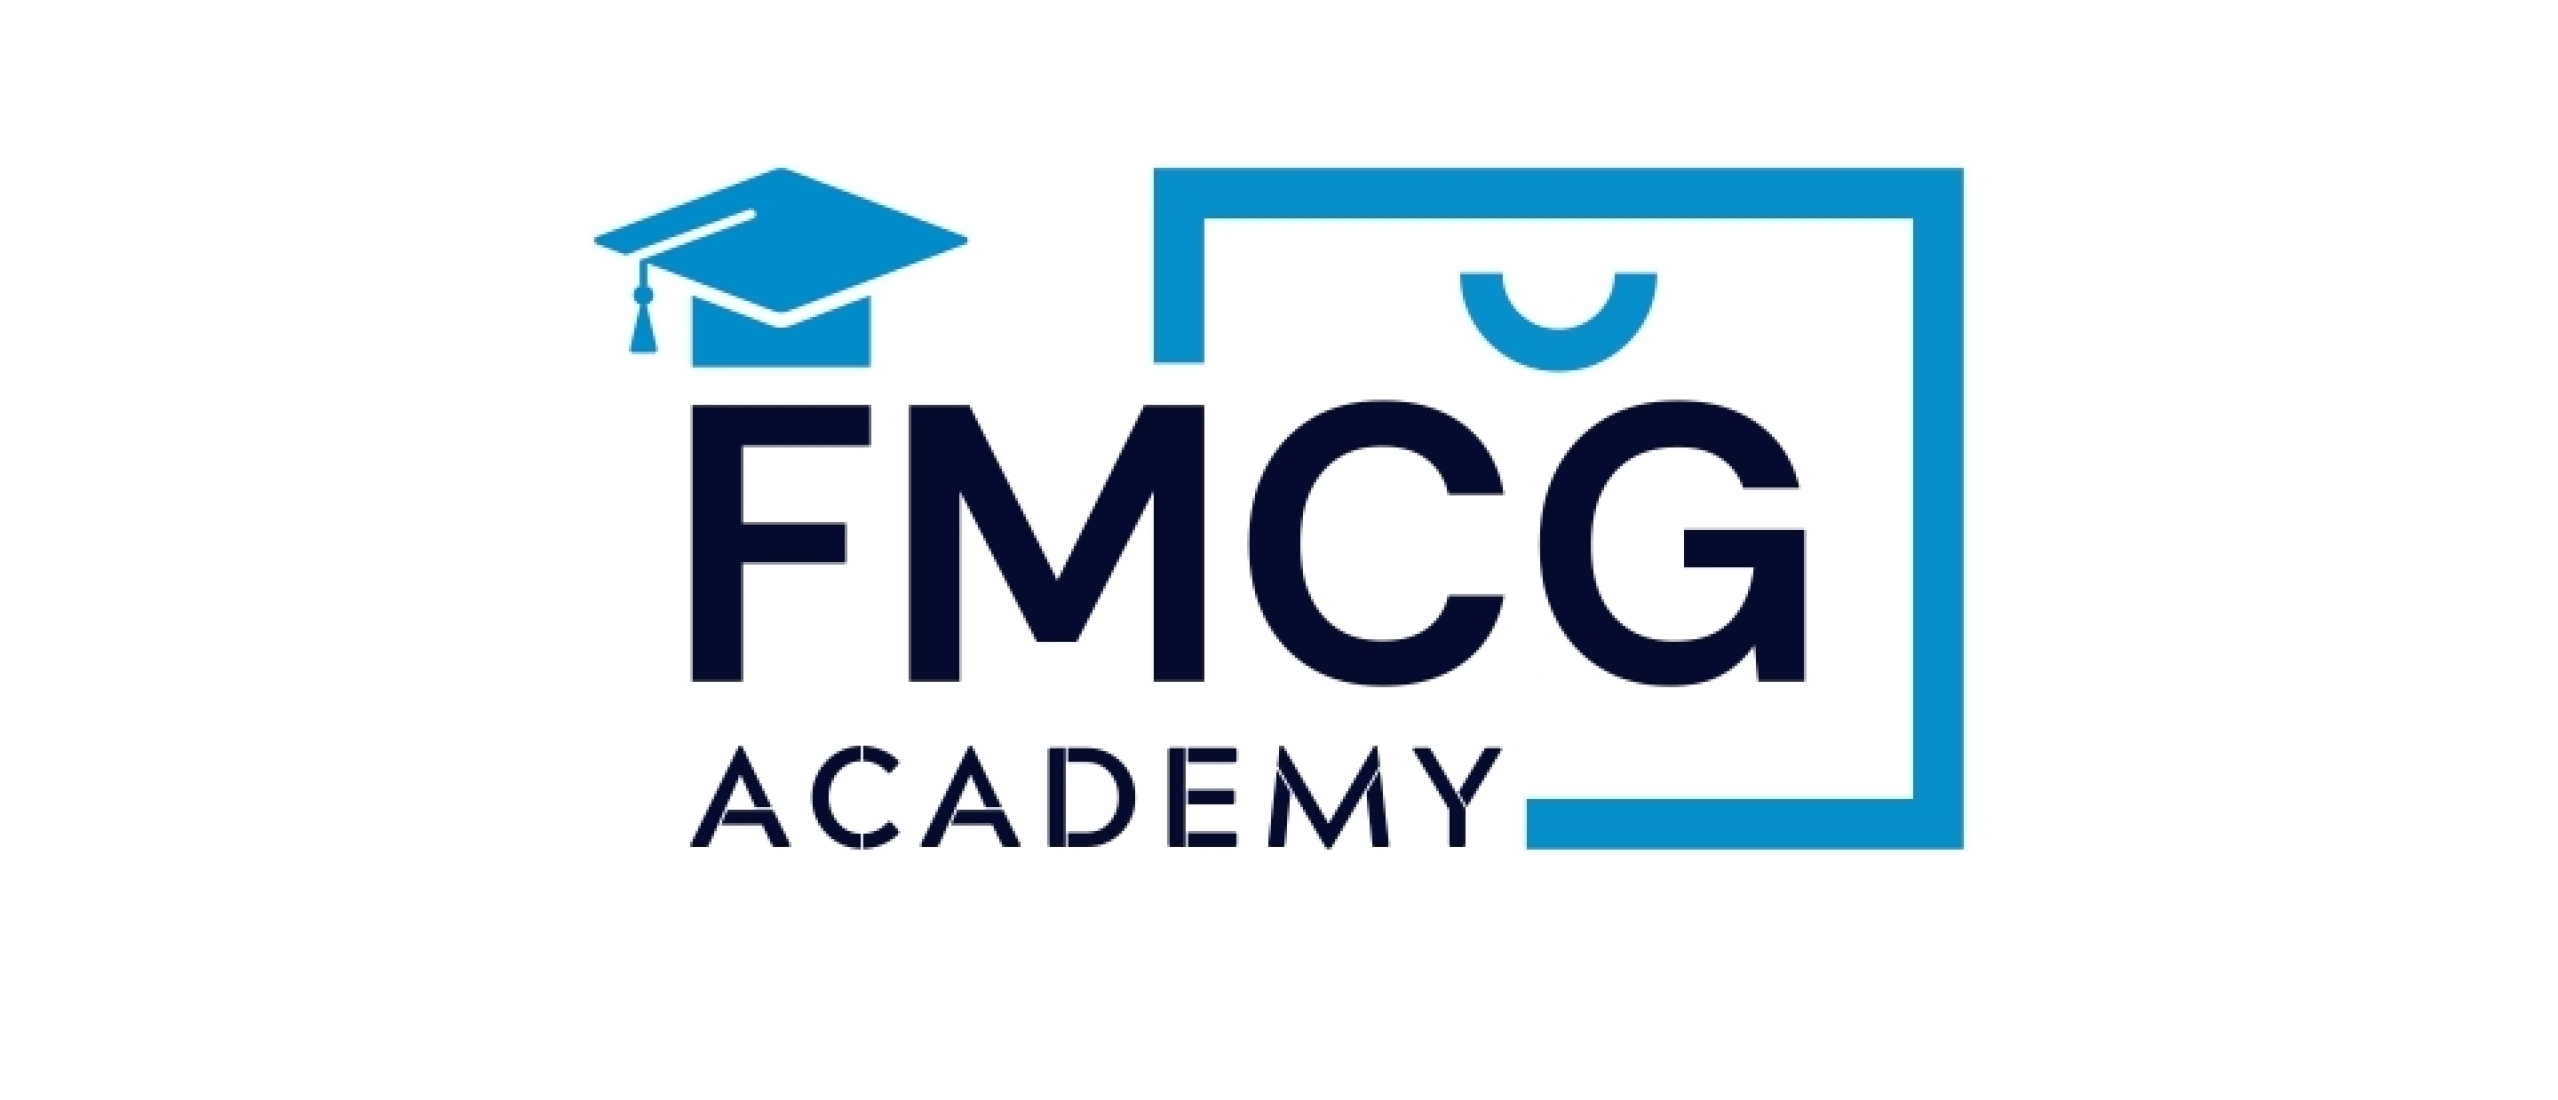 Bamboo Brands start FMCG Academy